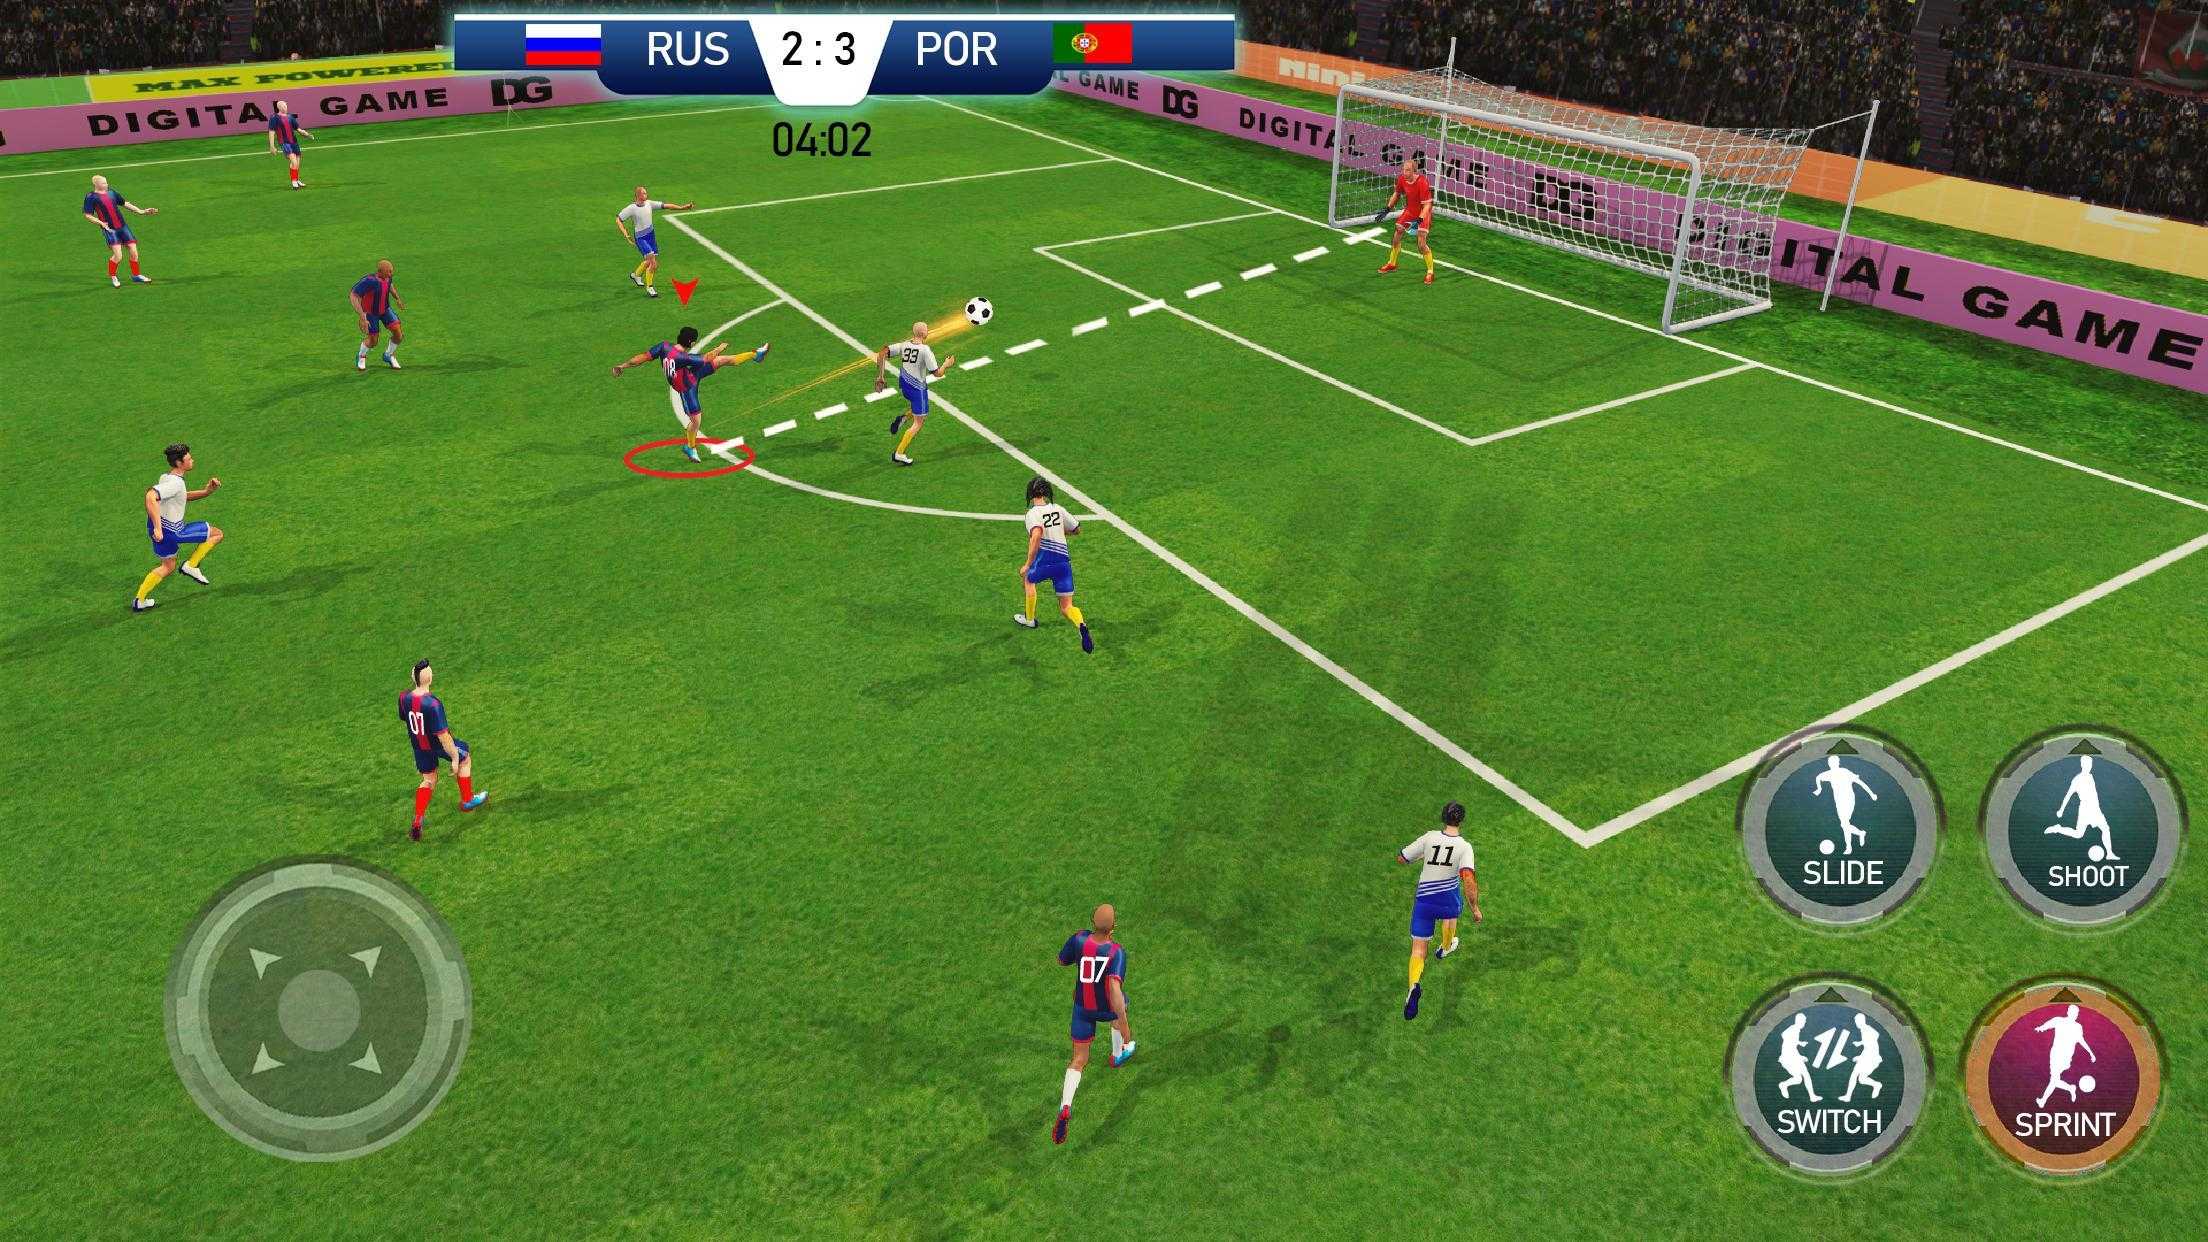 Play Soccer Cup 2020: Dream League Sports v1.9.5 (Mod Apk)